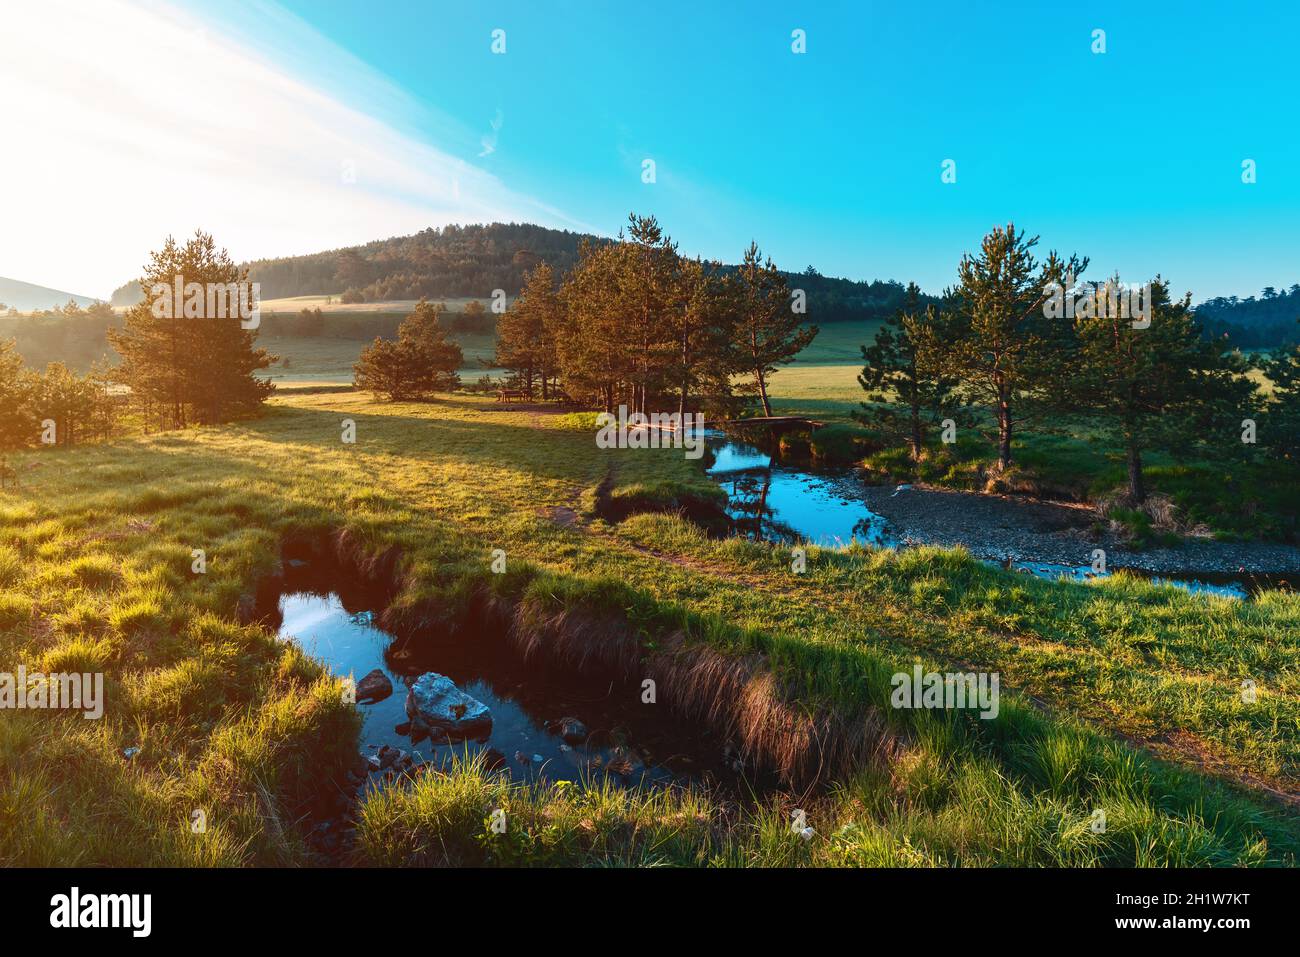 Vodez Landschaft mit weißen Kiefern und Weiden, Bach und ungezähmte Natur in Zlatibor Region, Serbien. Weitwinkelaufnahme einer wunderschönen Lage. Stockfoto